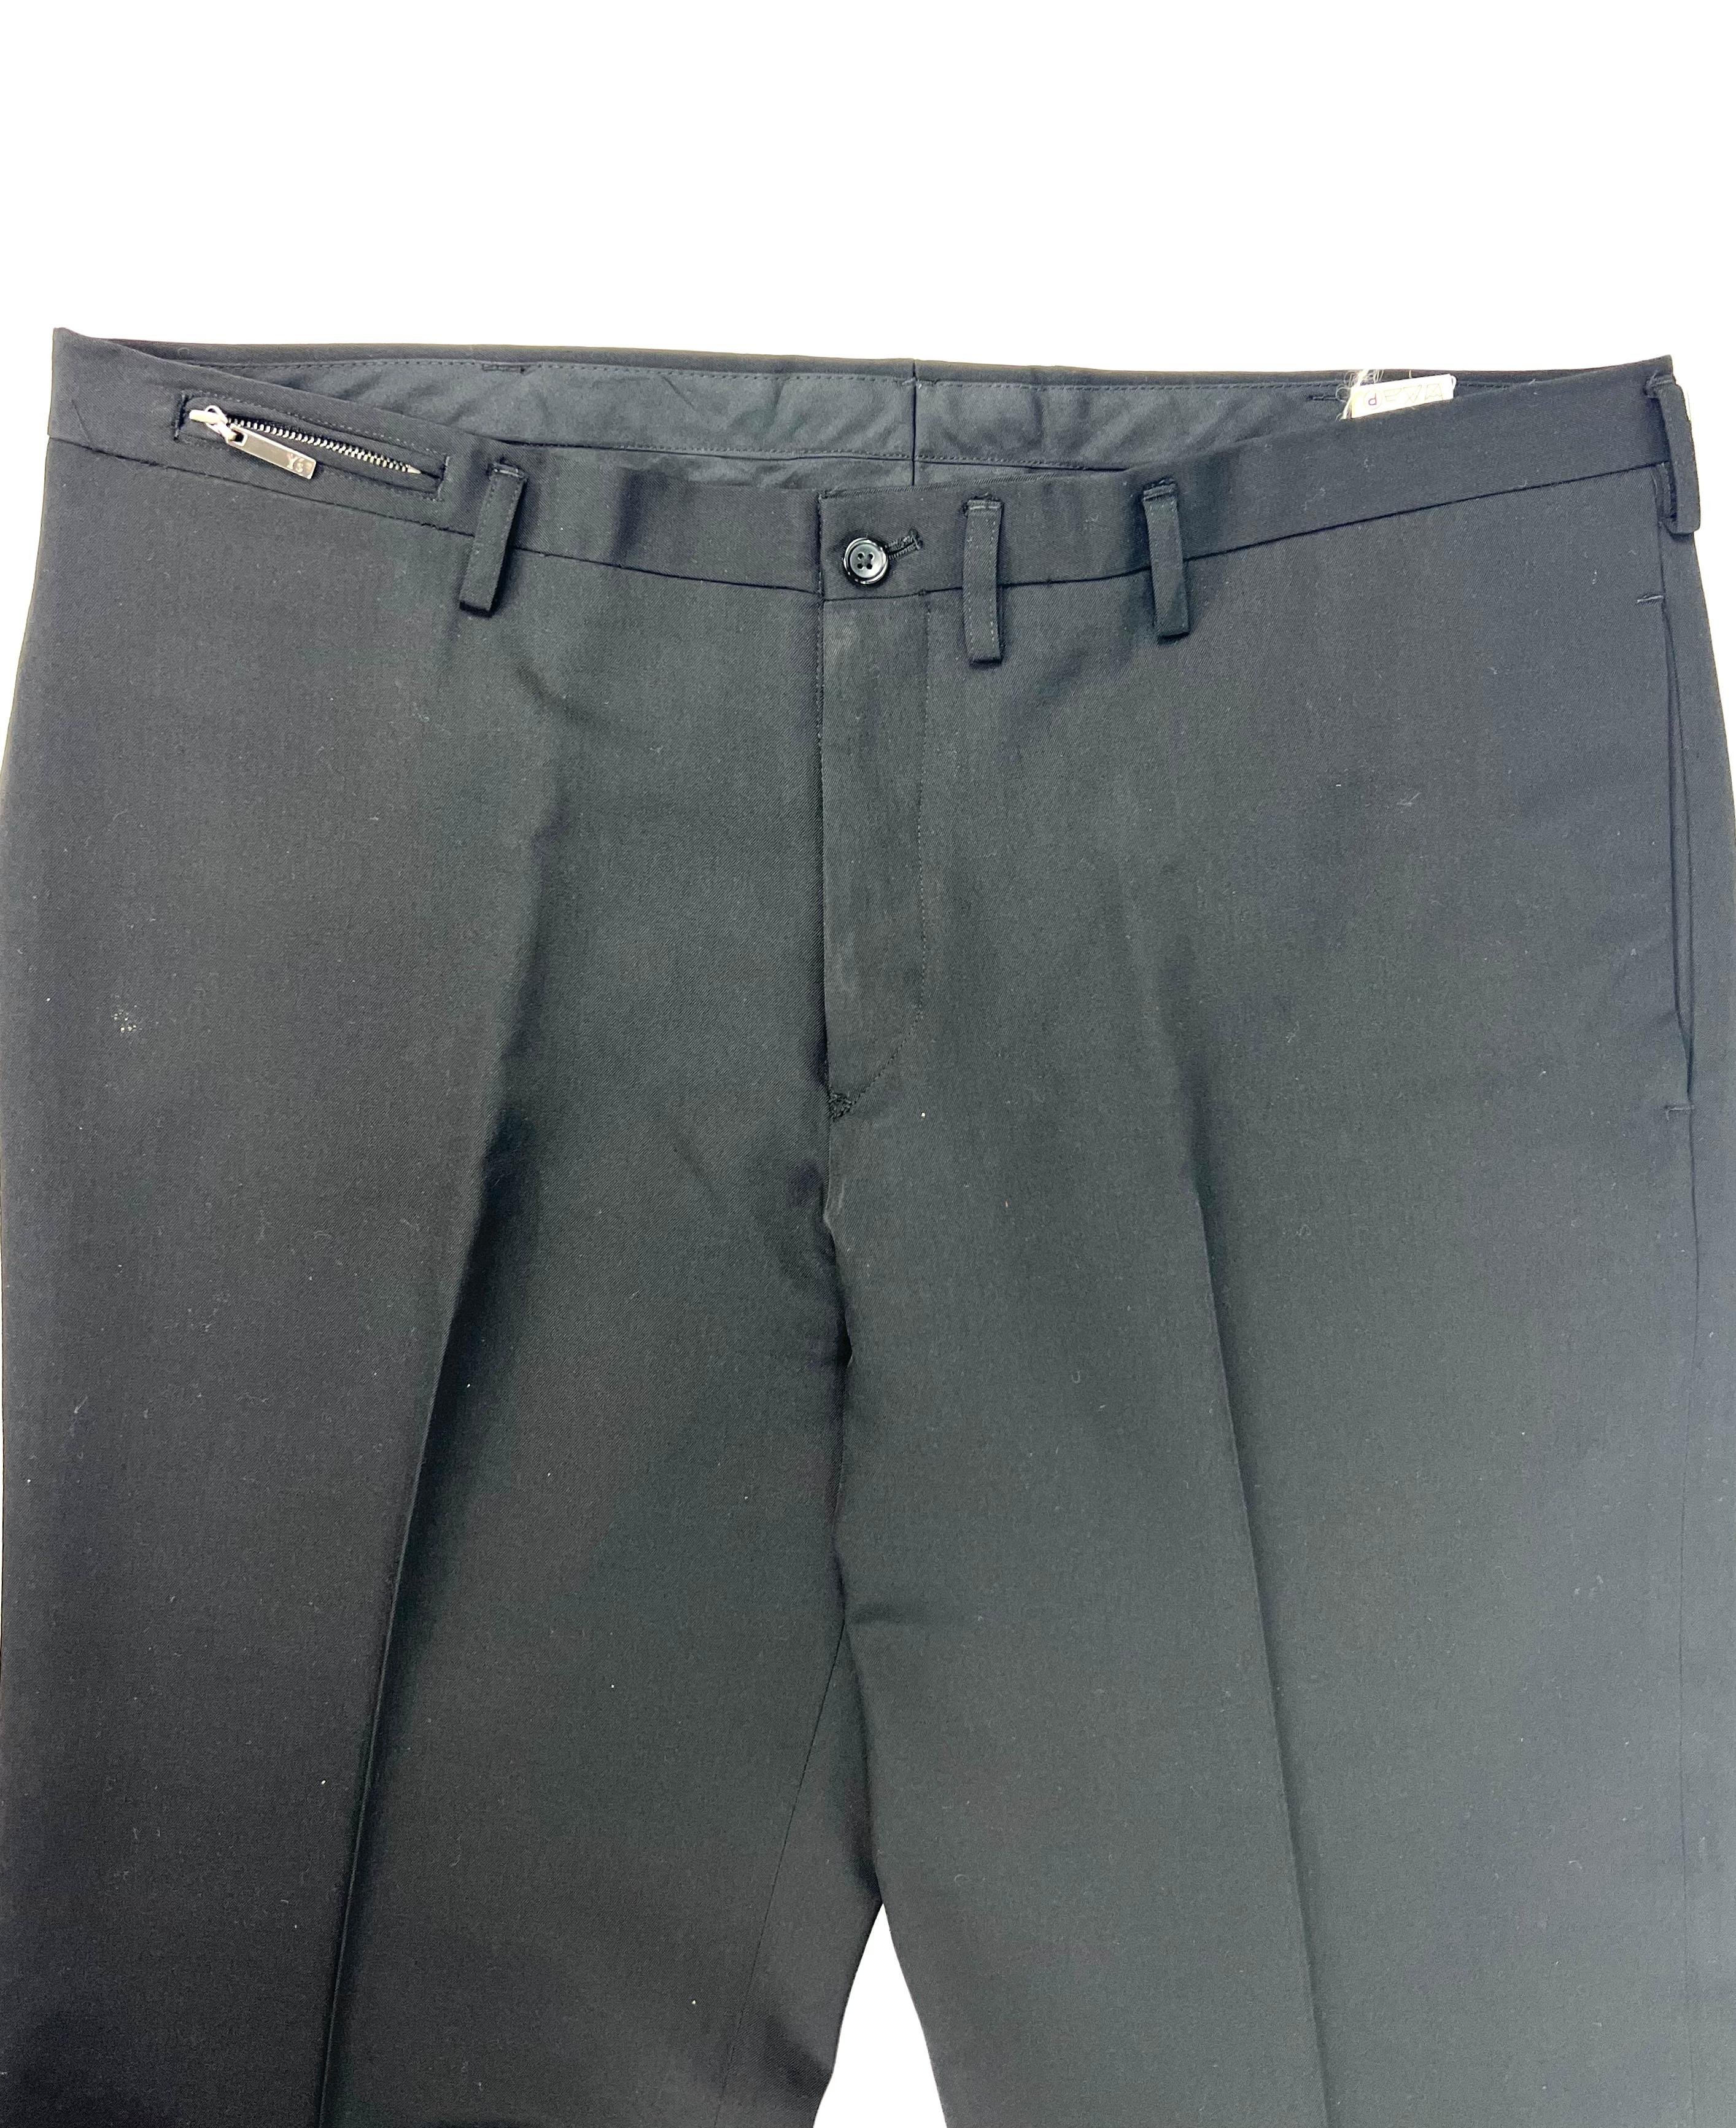 Détails du produit :

Le pantalon présente une coupe droite avec des poches latérales et arrière. Fabriqué au Japon.